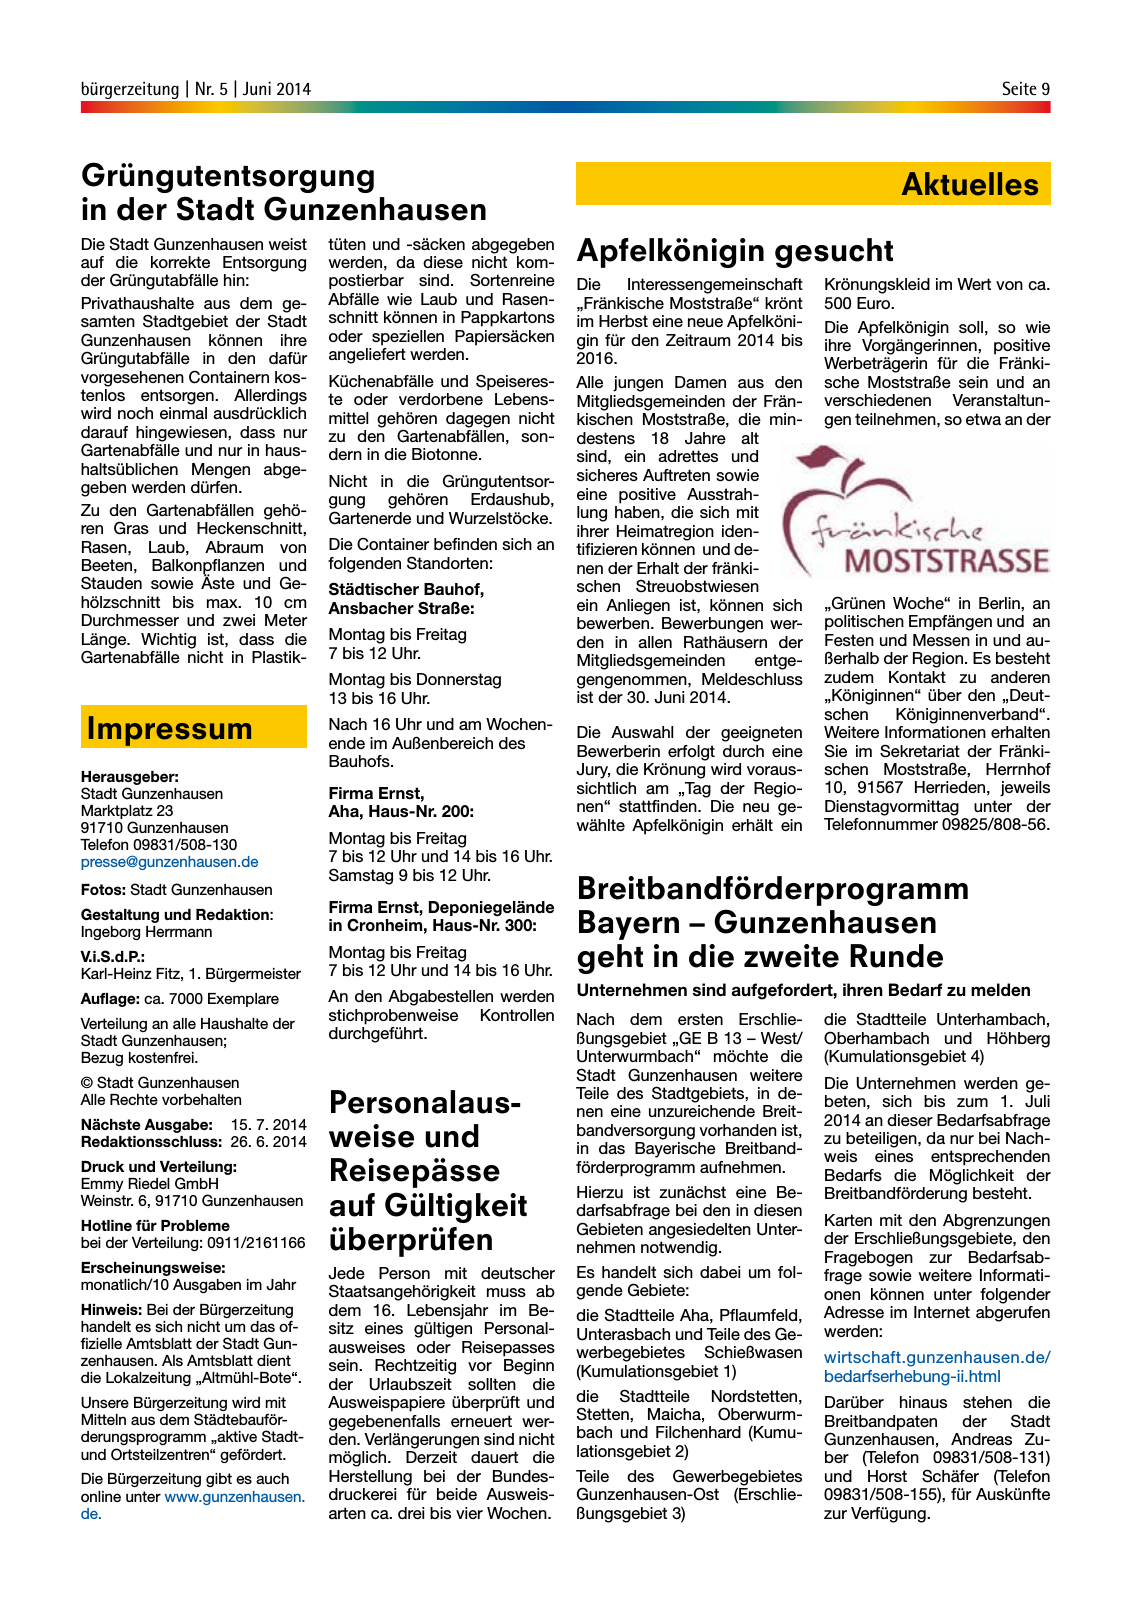 Vorschau buergerzeitung_Nr_5_Juni_2014 Seite 9